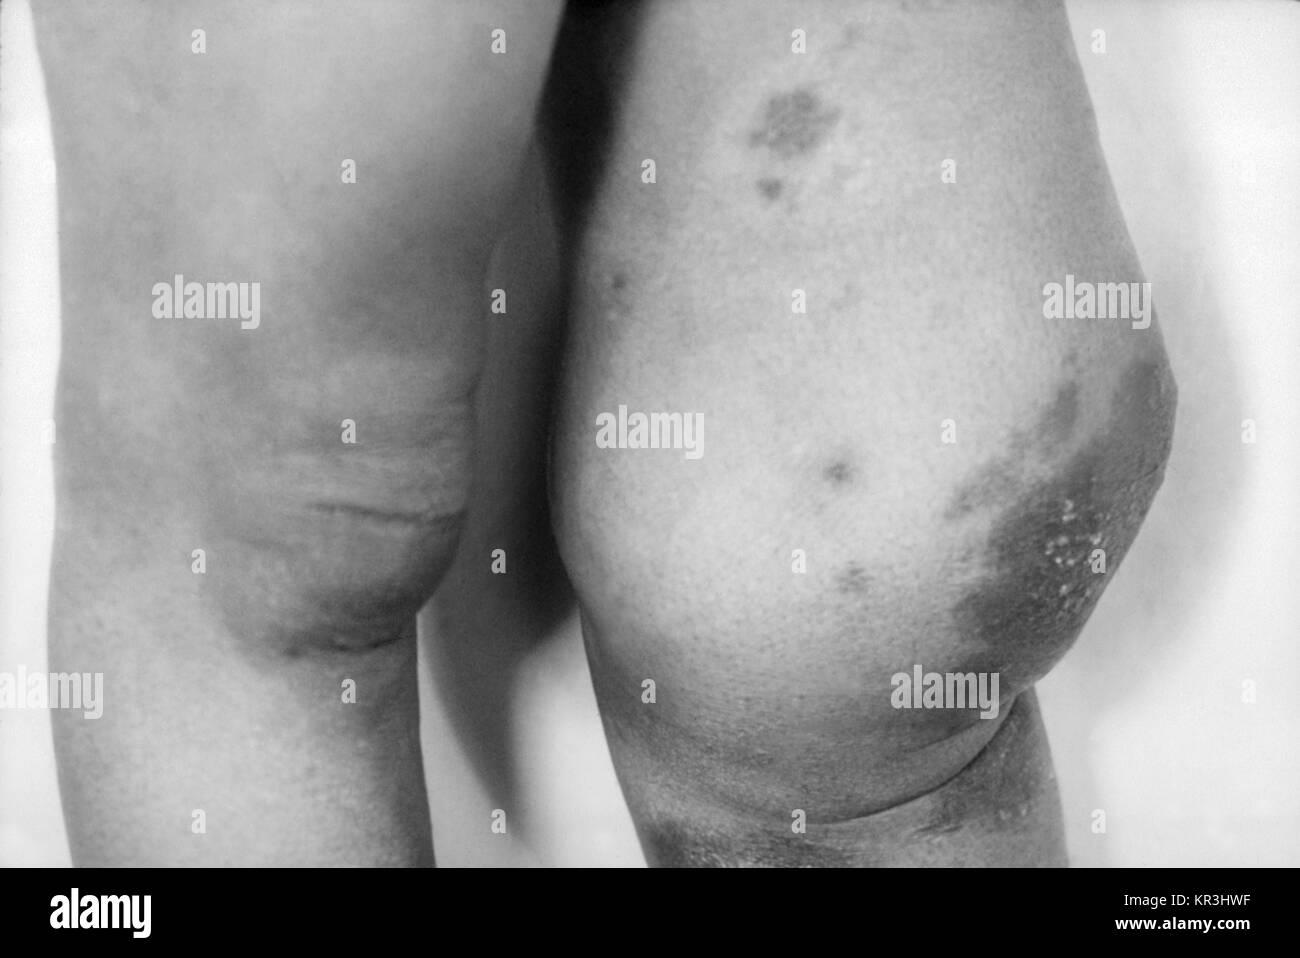 Foto von neuropathischen Patientenzahl (Charcot gemeinsame) von tertiäre Syphilis führt. Dieser Patient nachhaltig fortschreitende Zerstörung, Verfall, und Desorganisation des Kniegelenks von einem Verlust der Empfindung, die durch die langjährigen Tabes dorsalis, 1971 verursacht. Diese Bedingung wurde bei tertiäre Syphilis gebracht. Mit freundlicher CDC/Susan Lindsley. Stockfoto